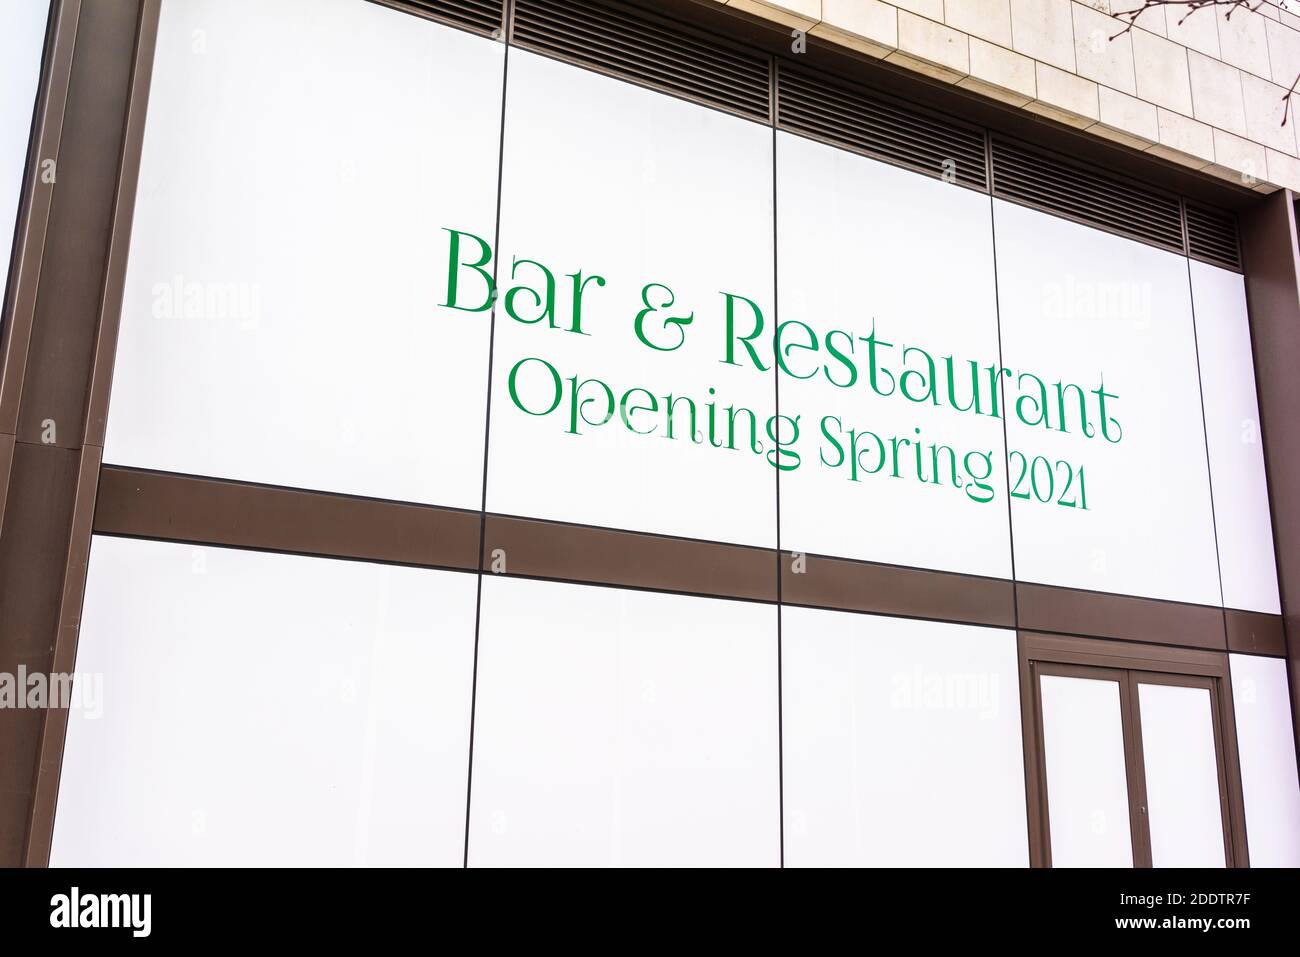 Un panneau pour l'ouverture d'un nouveau Bar & Restaurant au printemps 2021 dans le centre-ville de Southampton, Angleterre, Royaume-Uni Banque D'Images